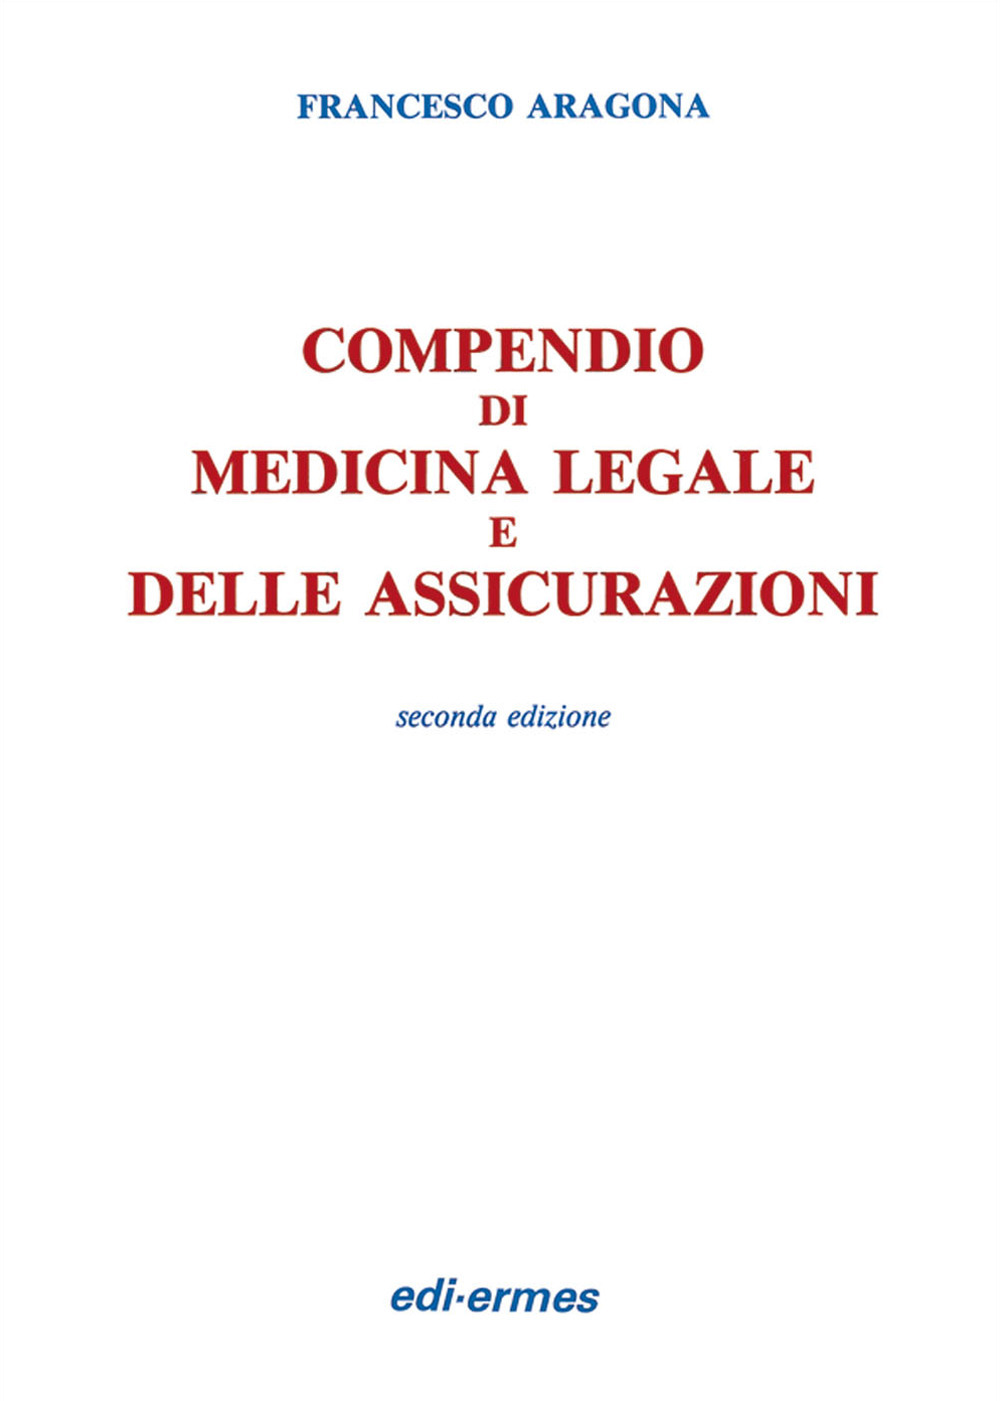 Compendio di medicina legale e delle assicurazioni